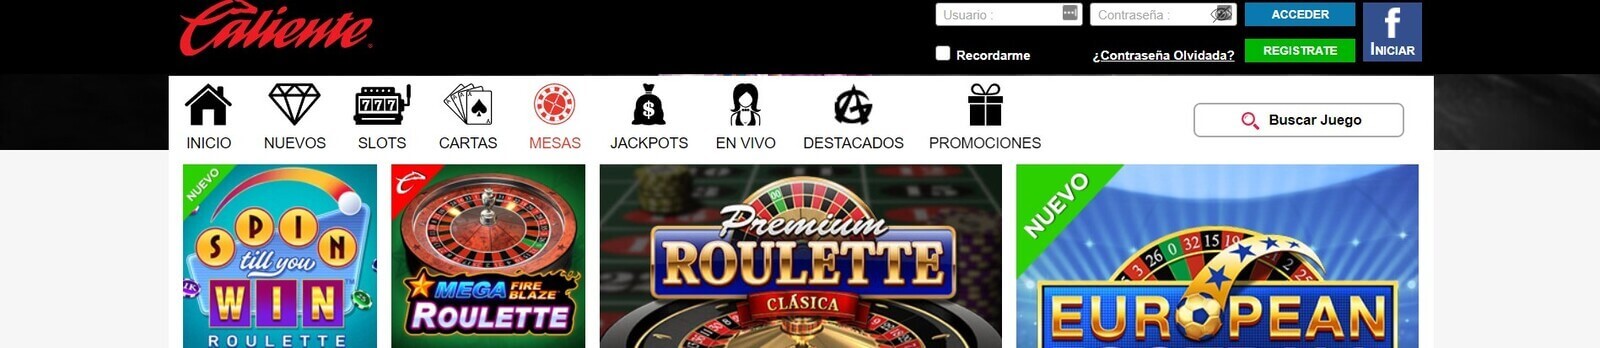 Juegos de Caliente Casino